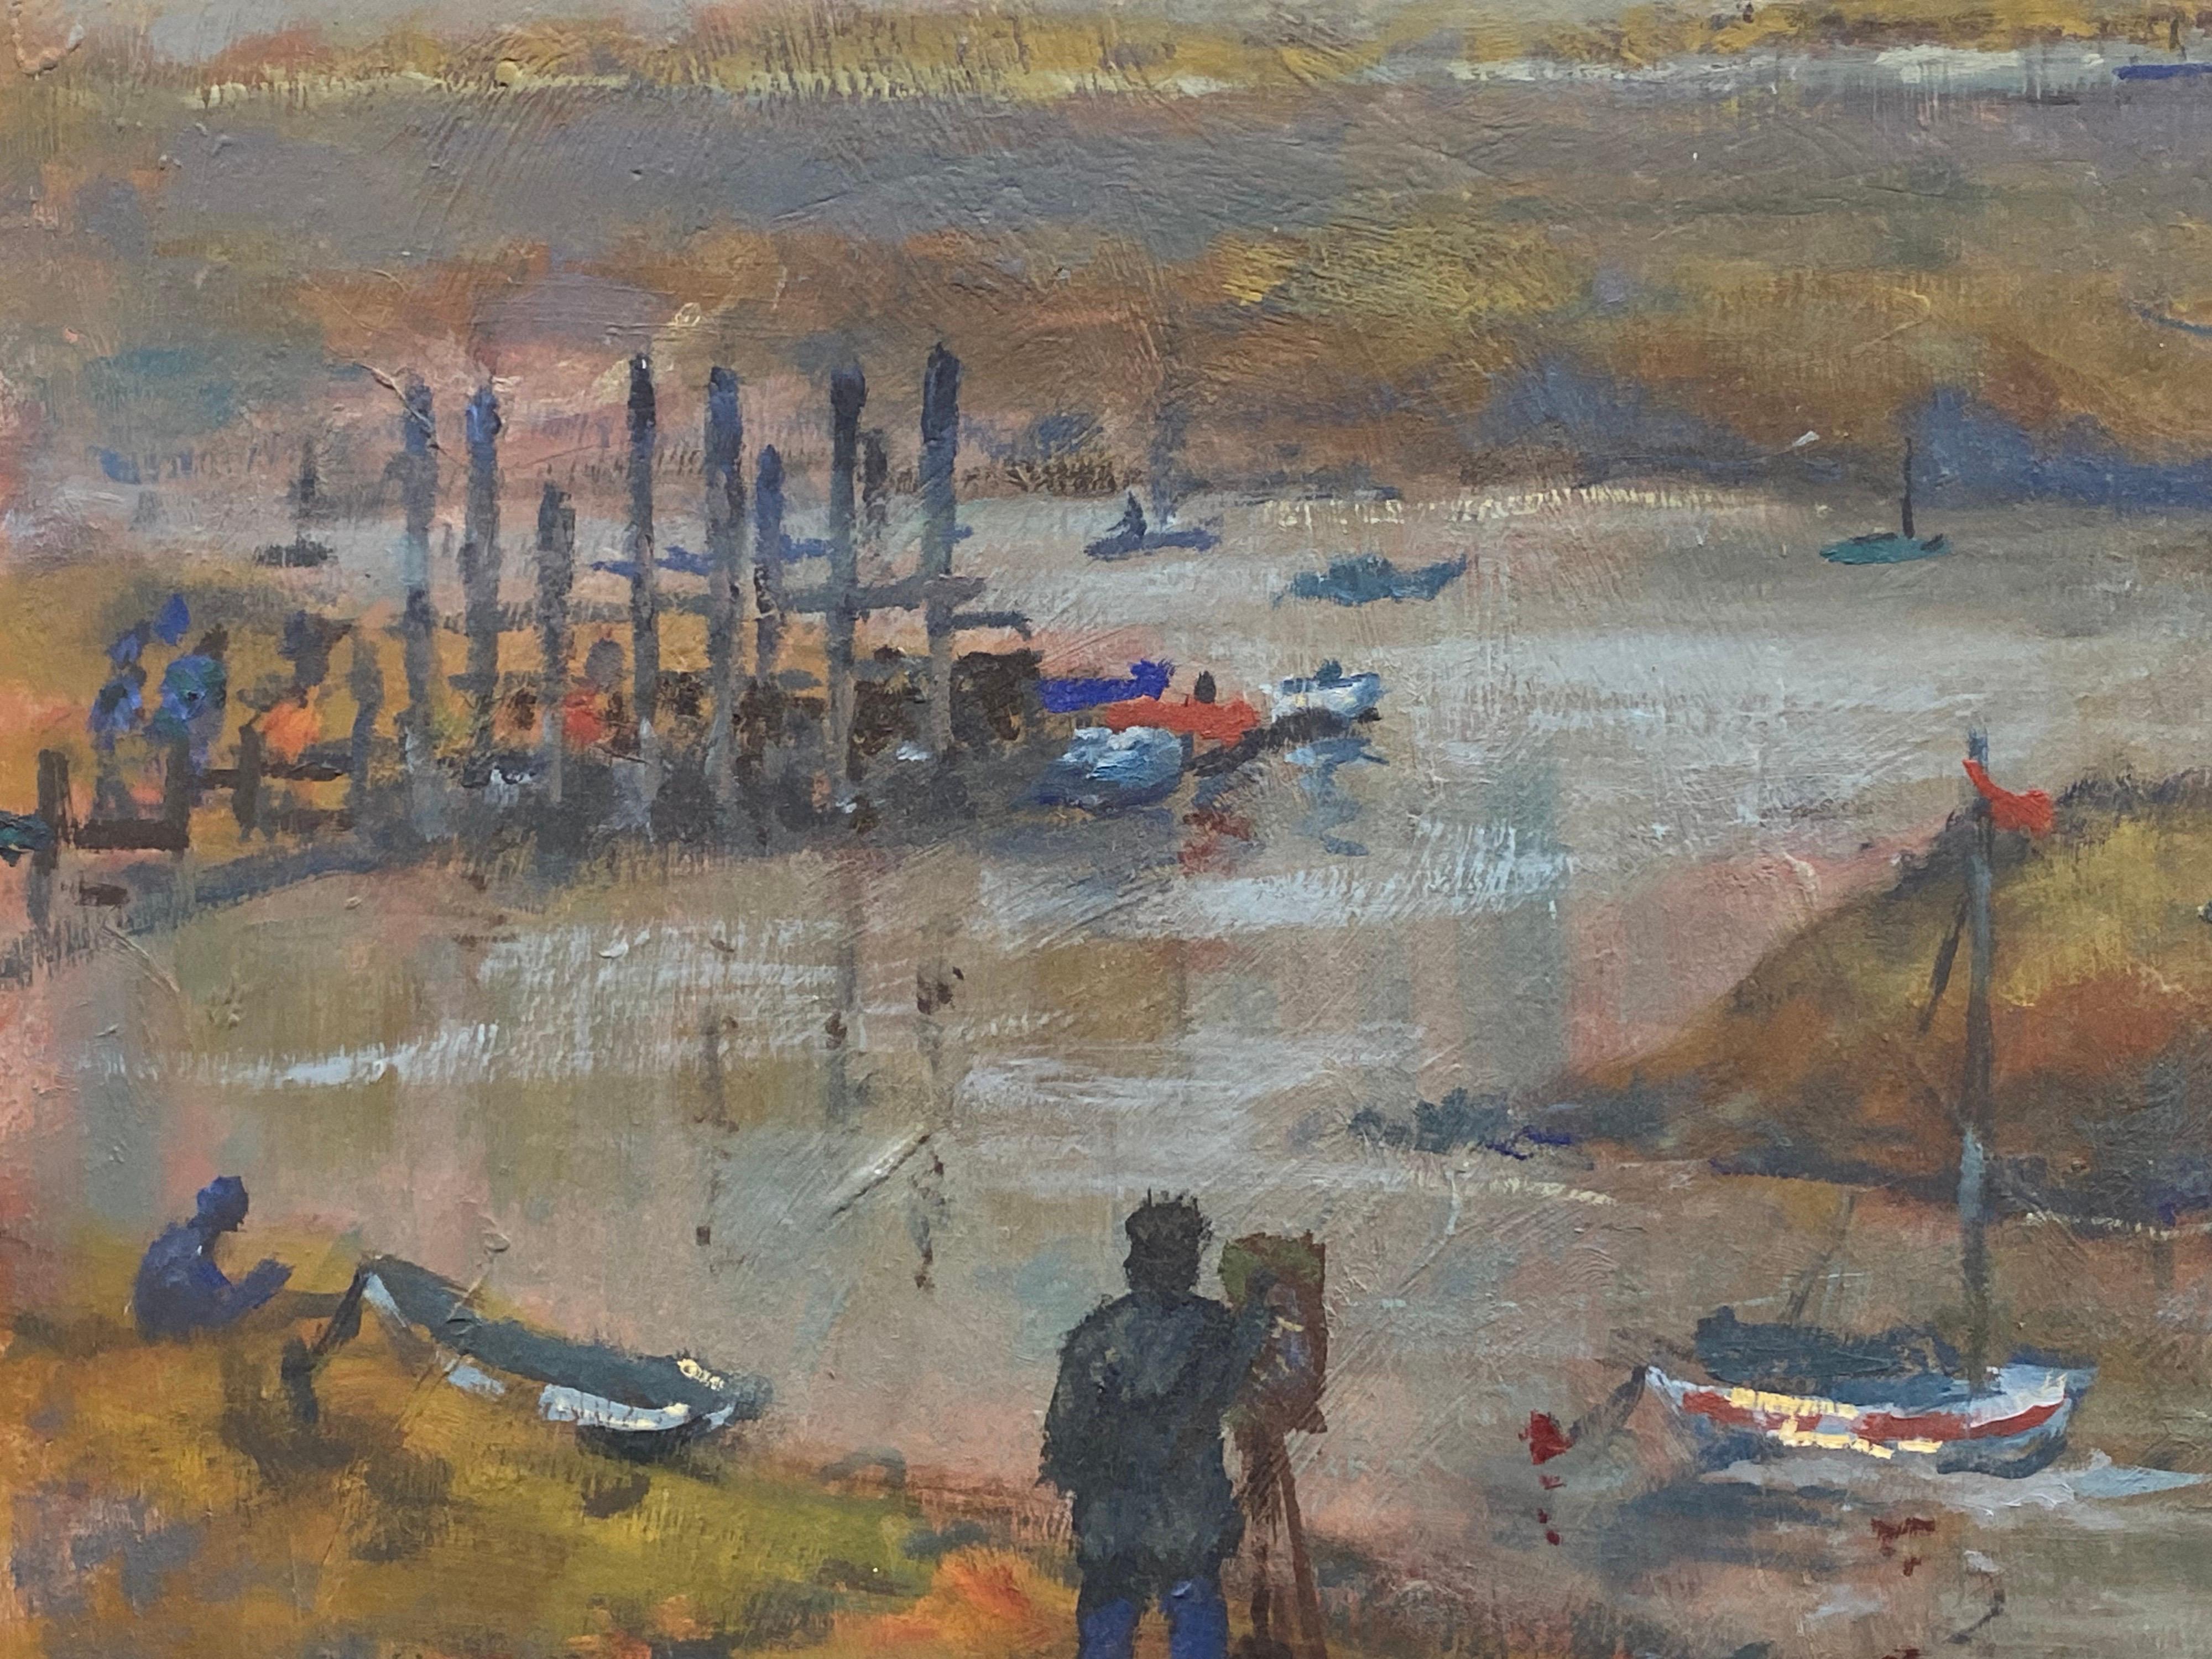 Peinture à l'huile impressionniste anglaise vintage - Peinture d'un artiste par Estuary Boats - Painting de English Impressionist